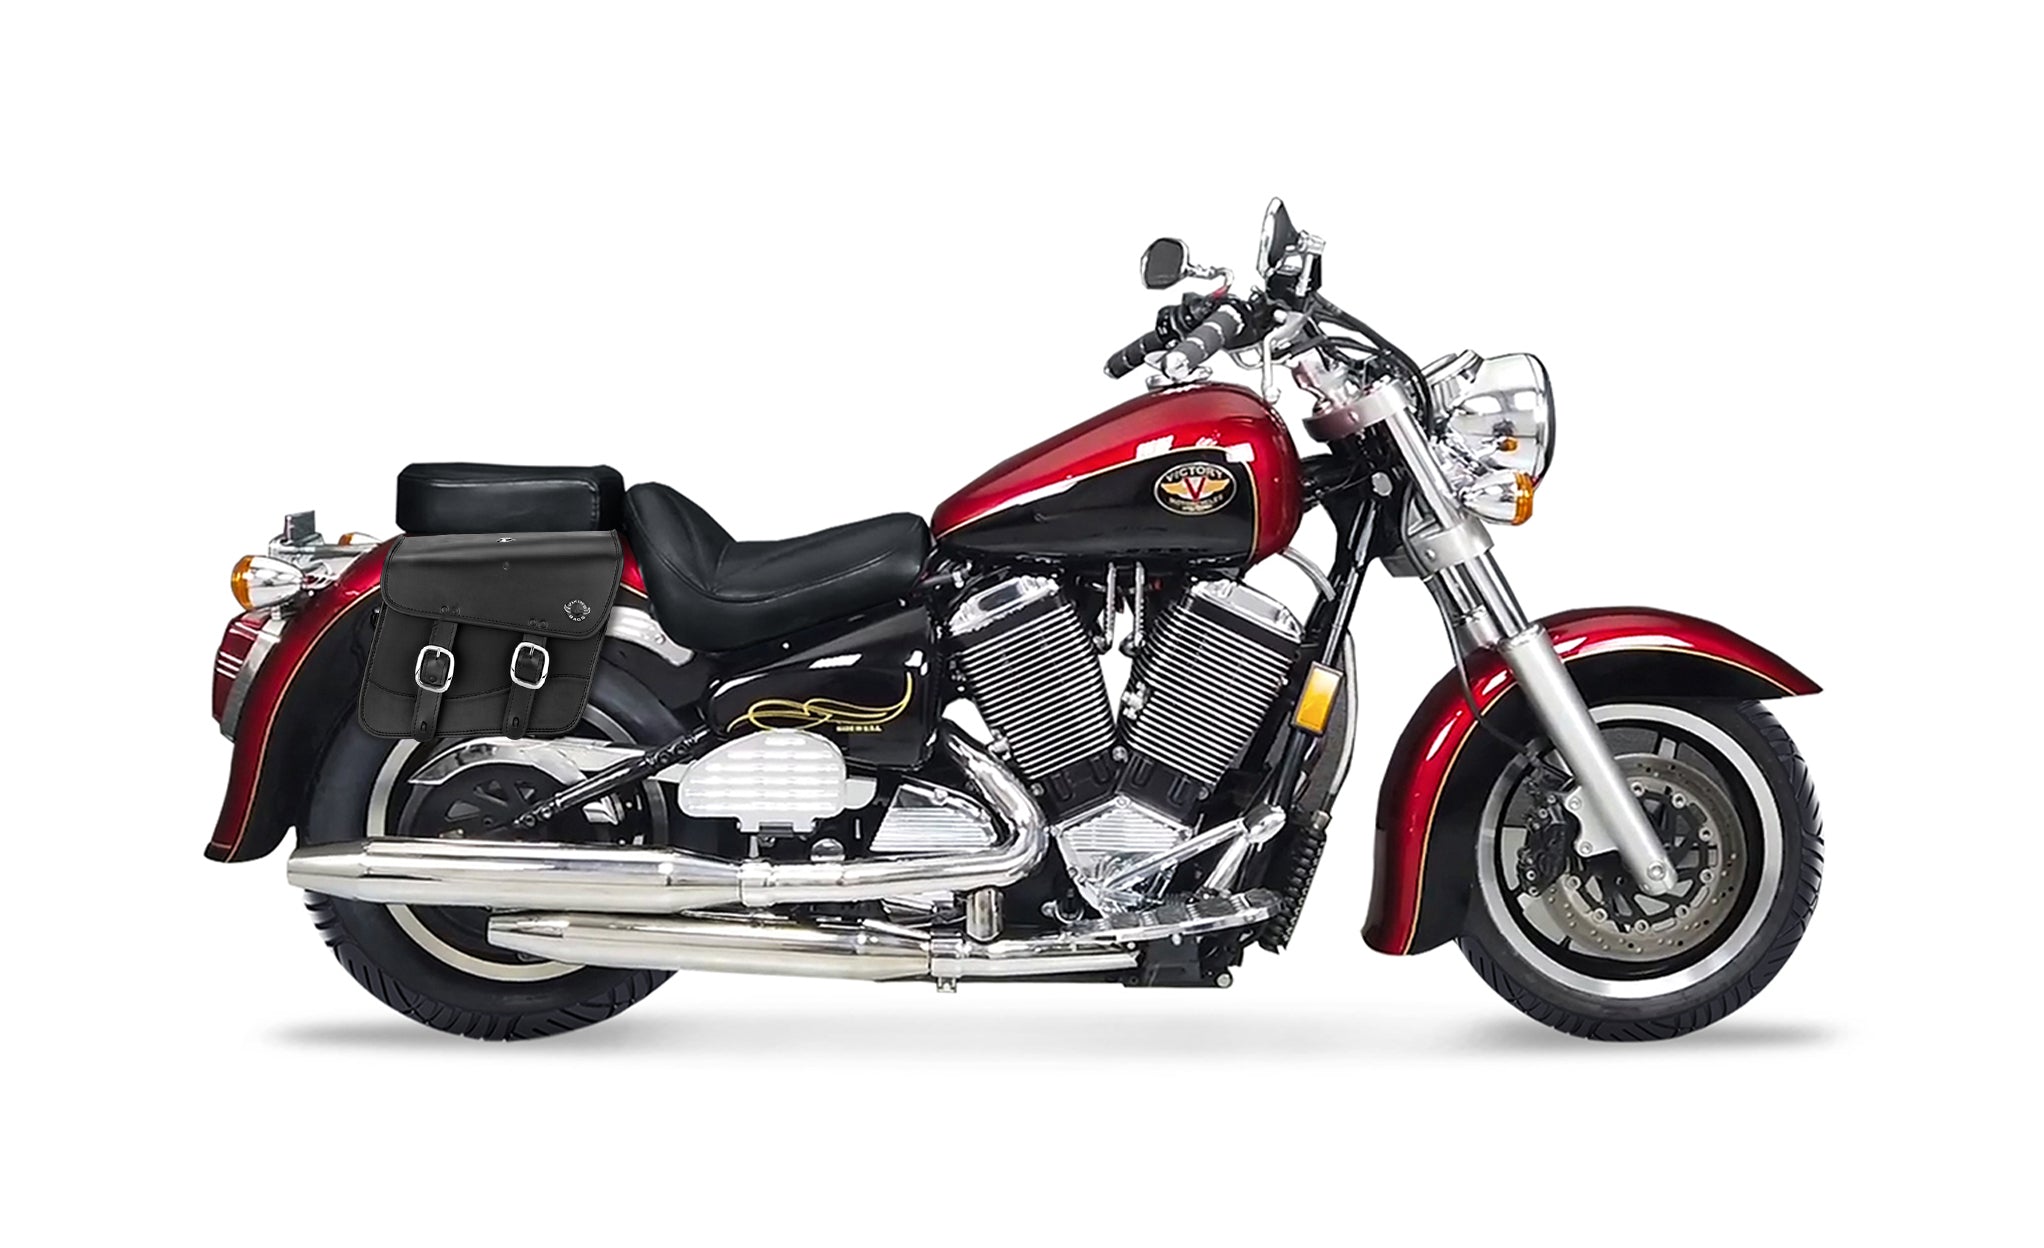 20L - Thor Medium Victory V92C Leather Motorcycle Saddlebags on Bike Photo @expand